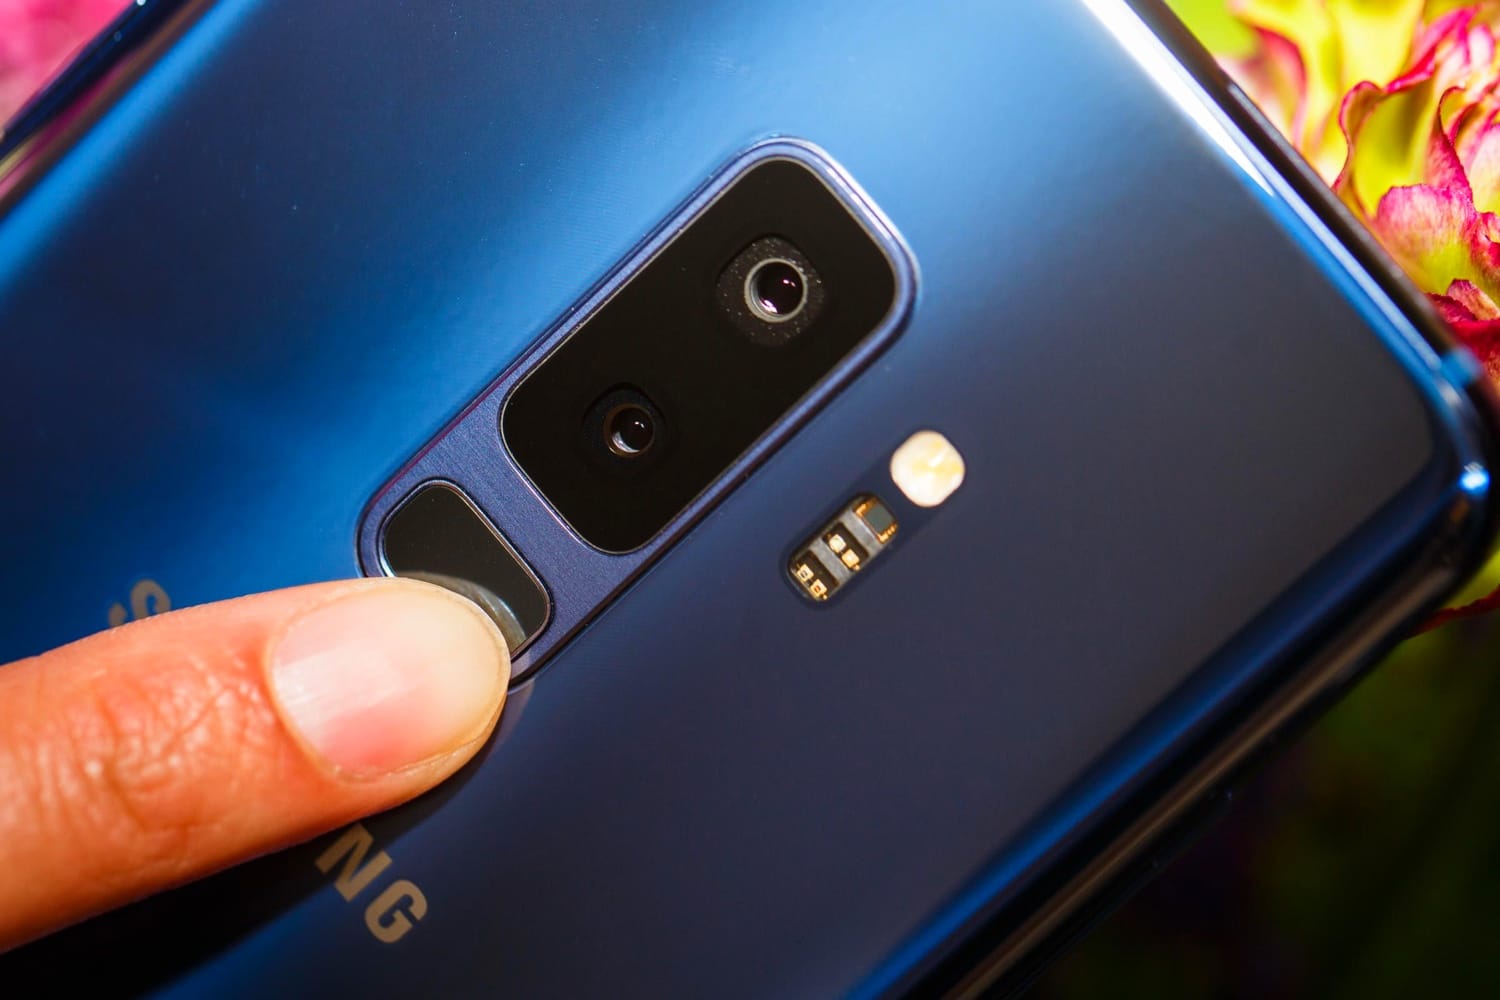 Samsung Galaxy S9 hiện đã hổ trợ Google ARCore